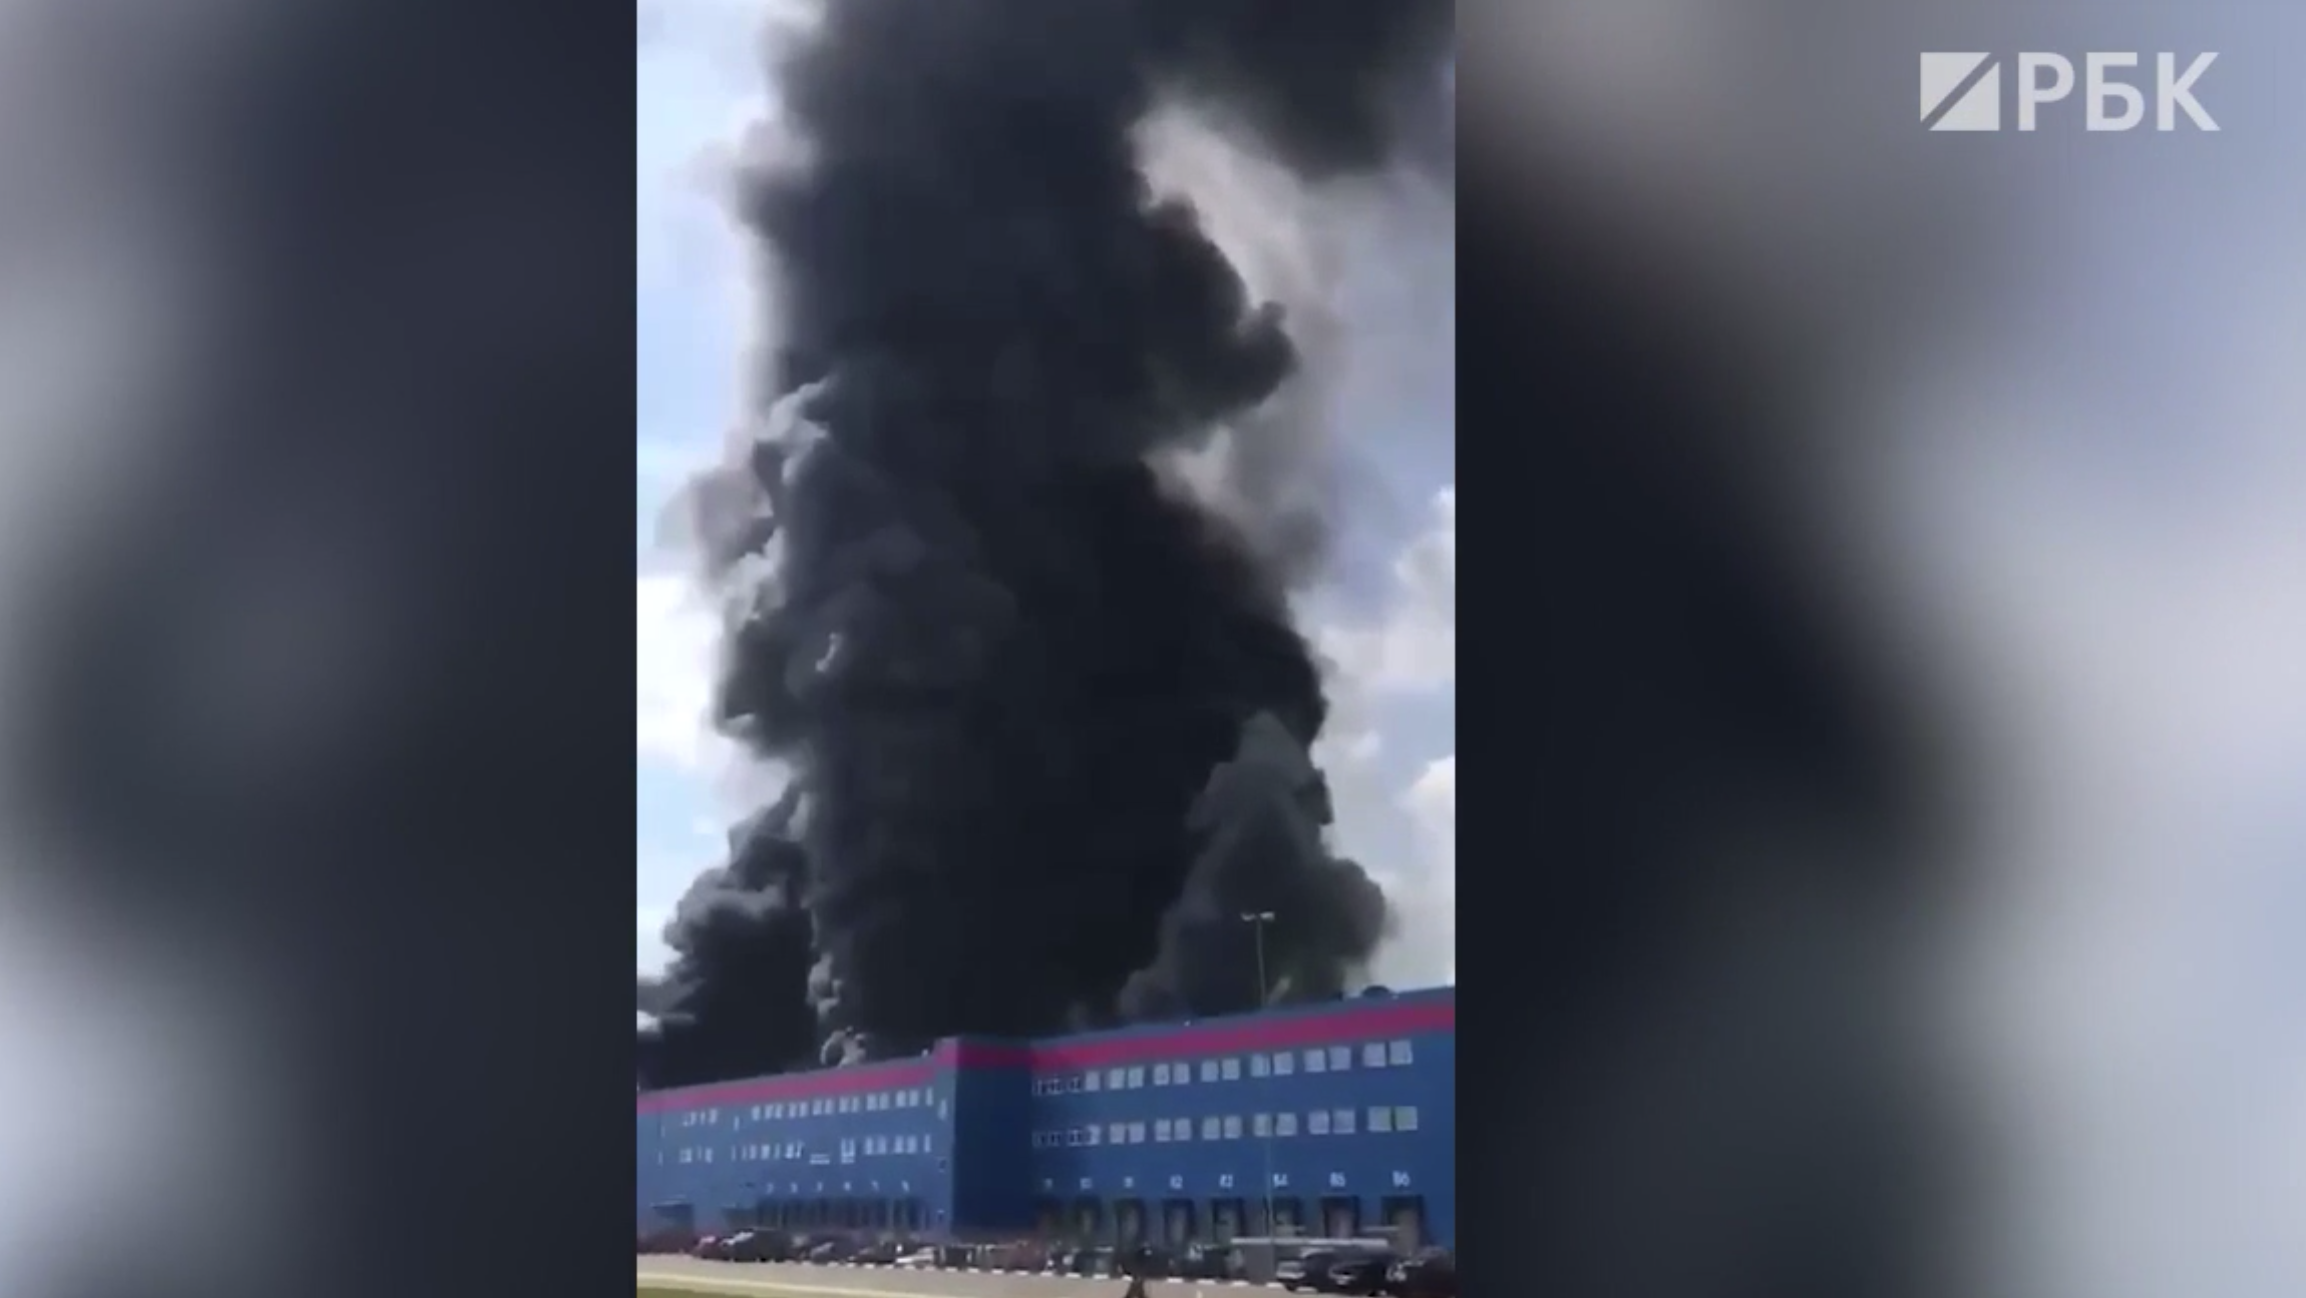 При пожаре на складе Ozon в Подмосковье пострадали 11 человек